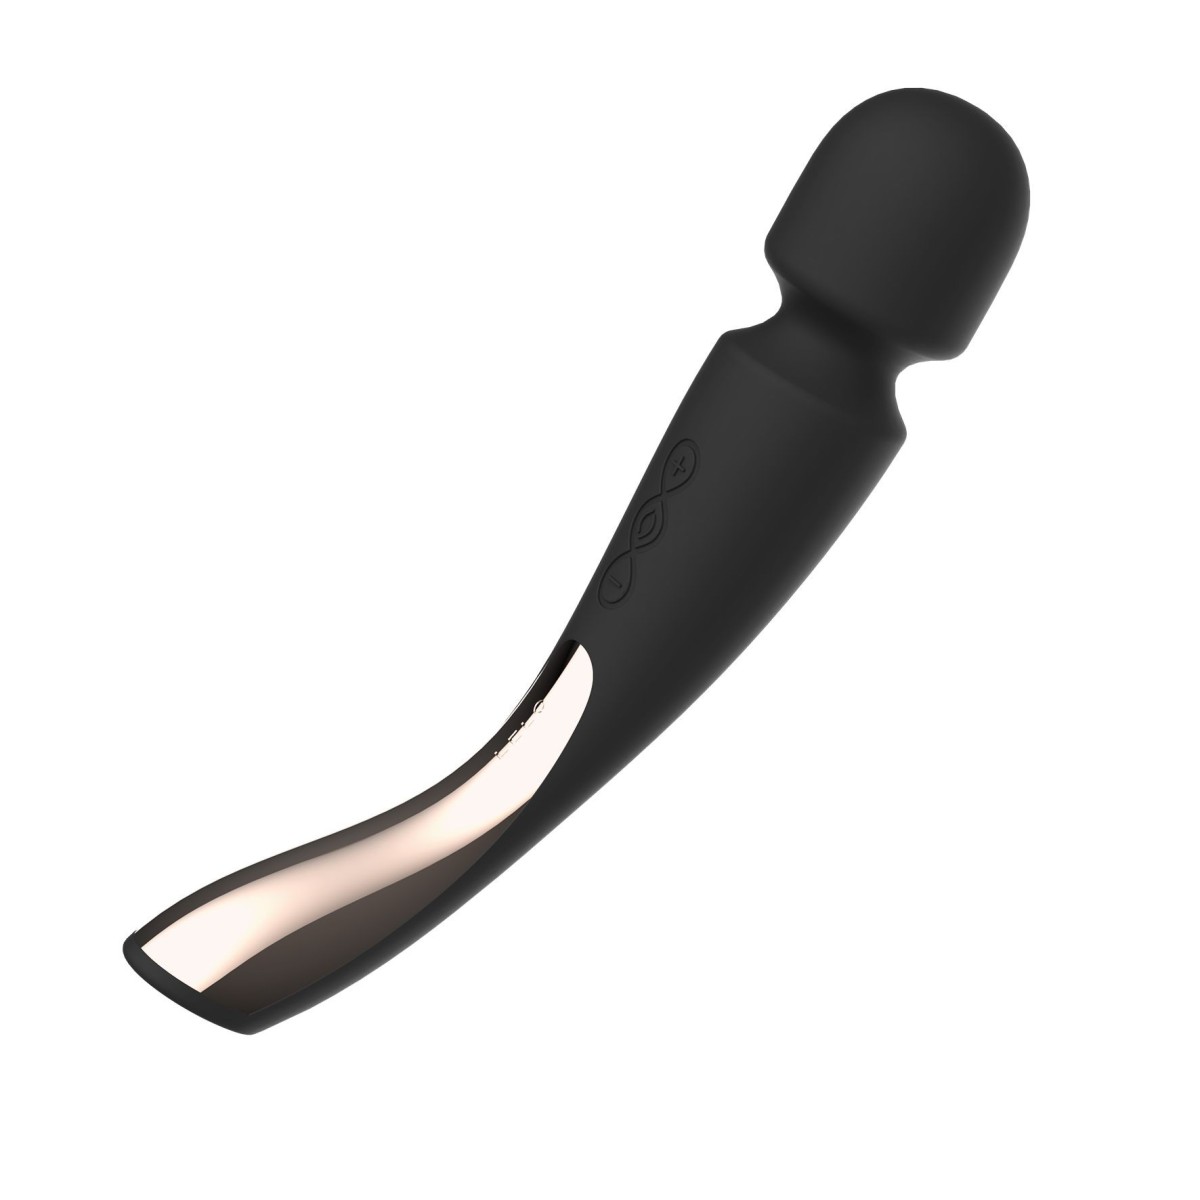 Masážní hlavice LELO Smart Wand 2 Medium Black, luxusní vibrační masážní hlavice 21 x 4,5 cm